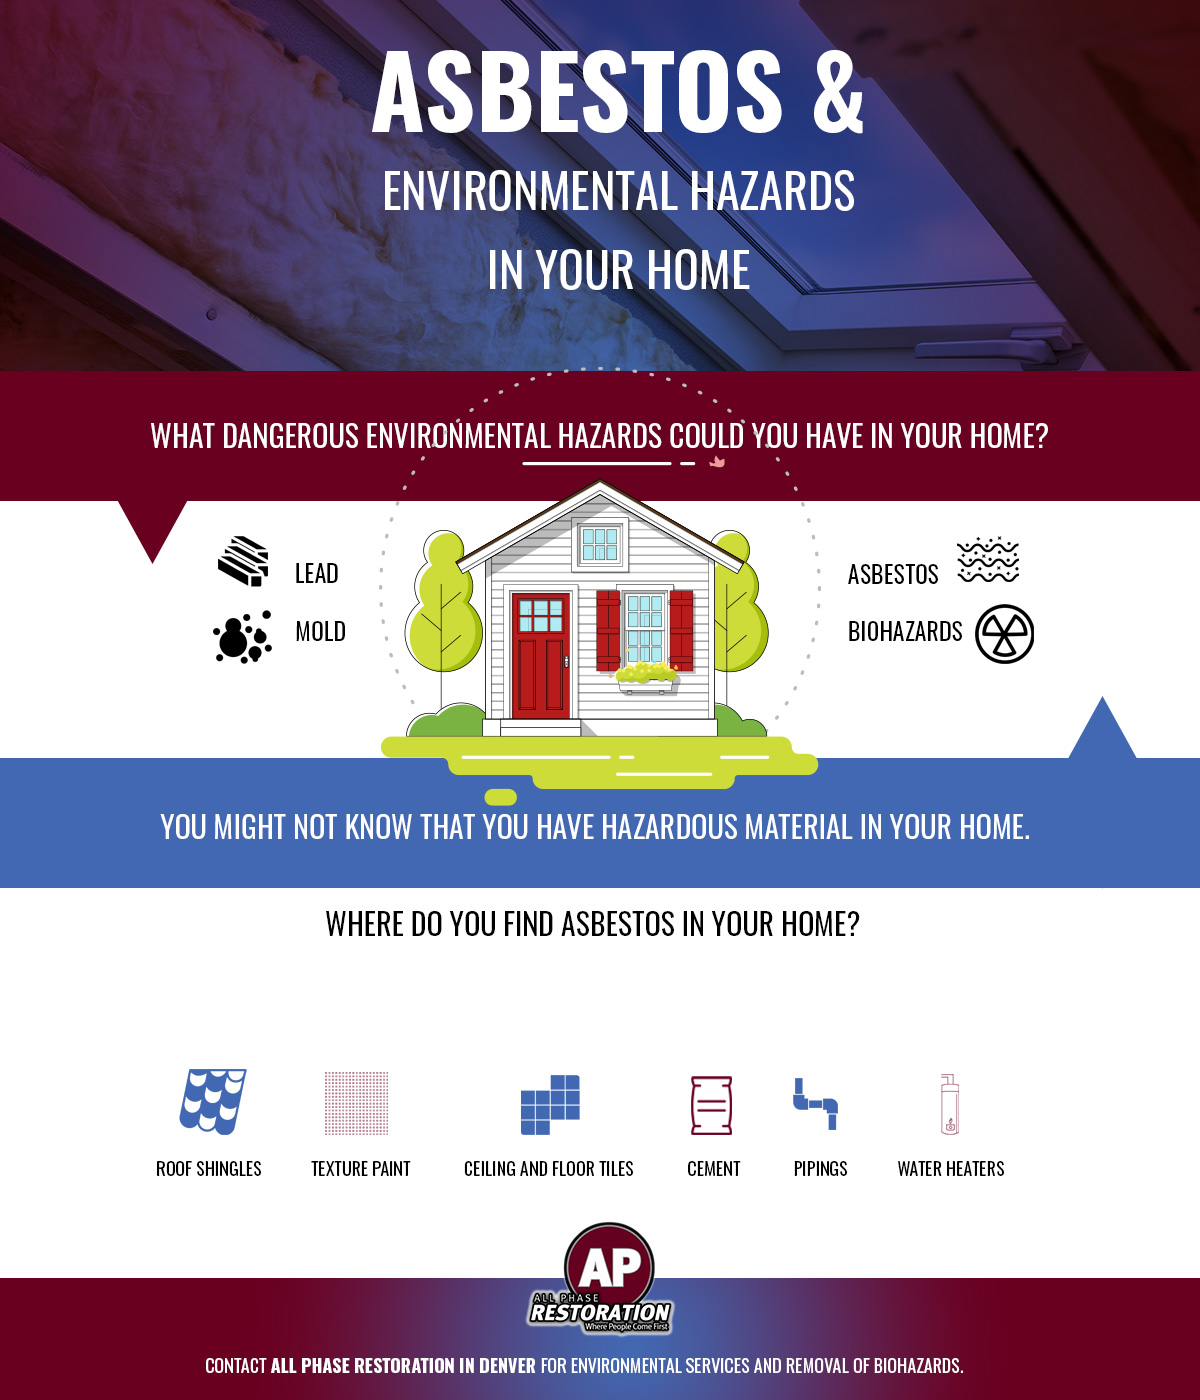 Asbestos & Environmental Hazards in Your Home